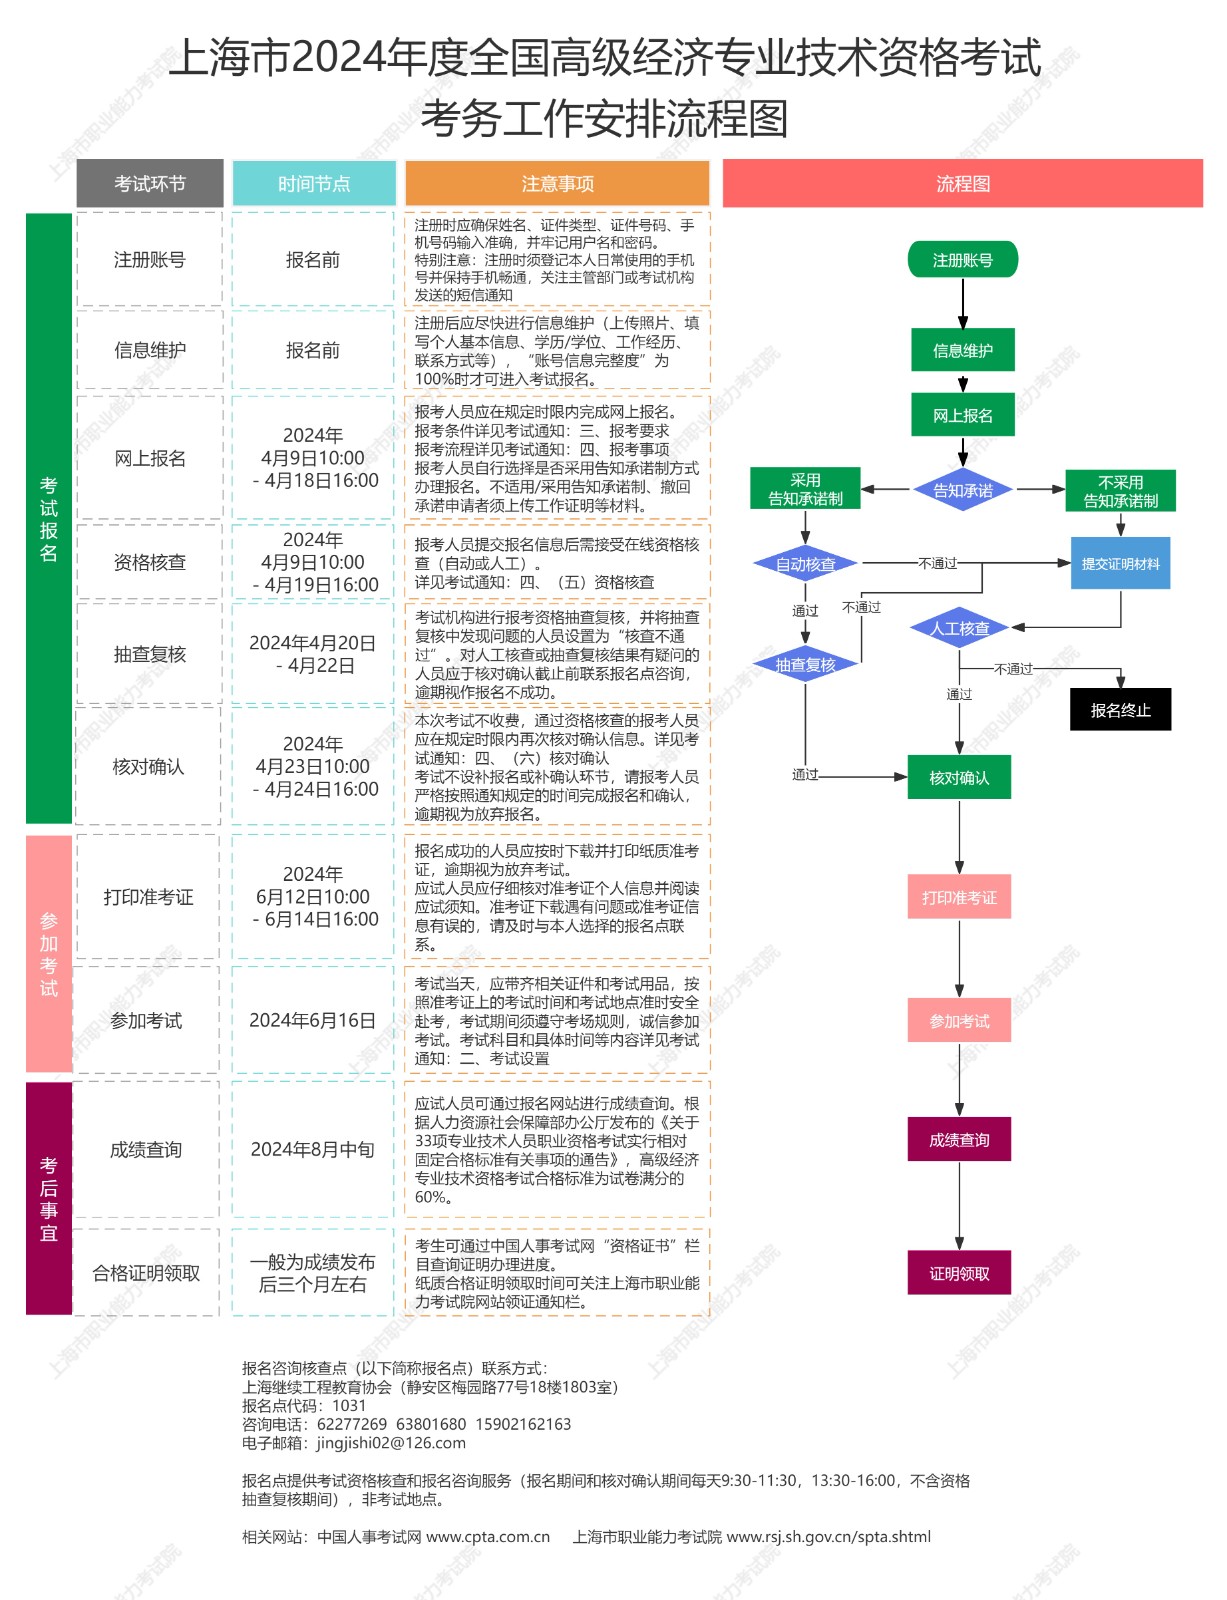 2024年上海高级经济师考务安排流程图